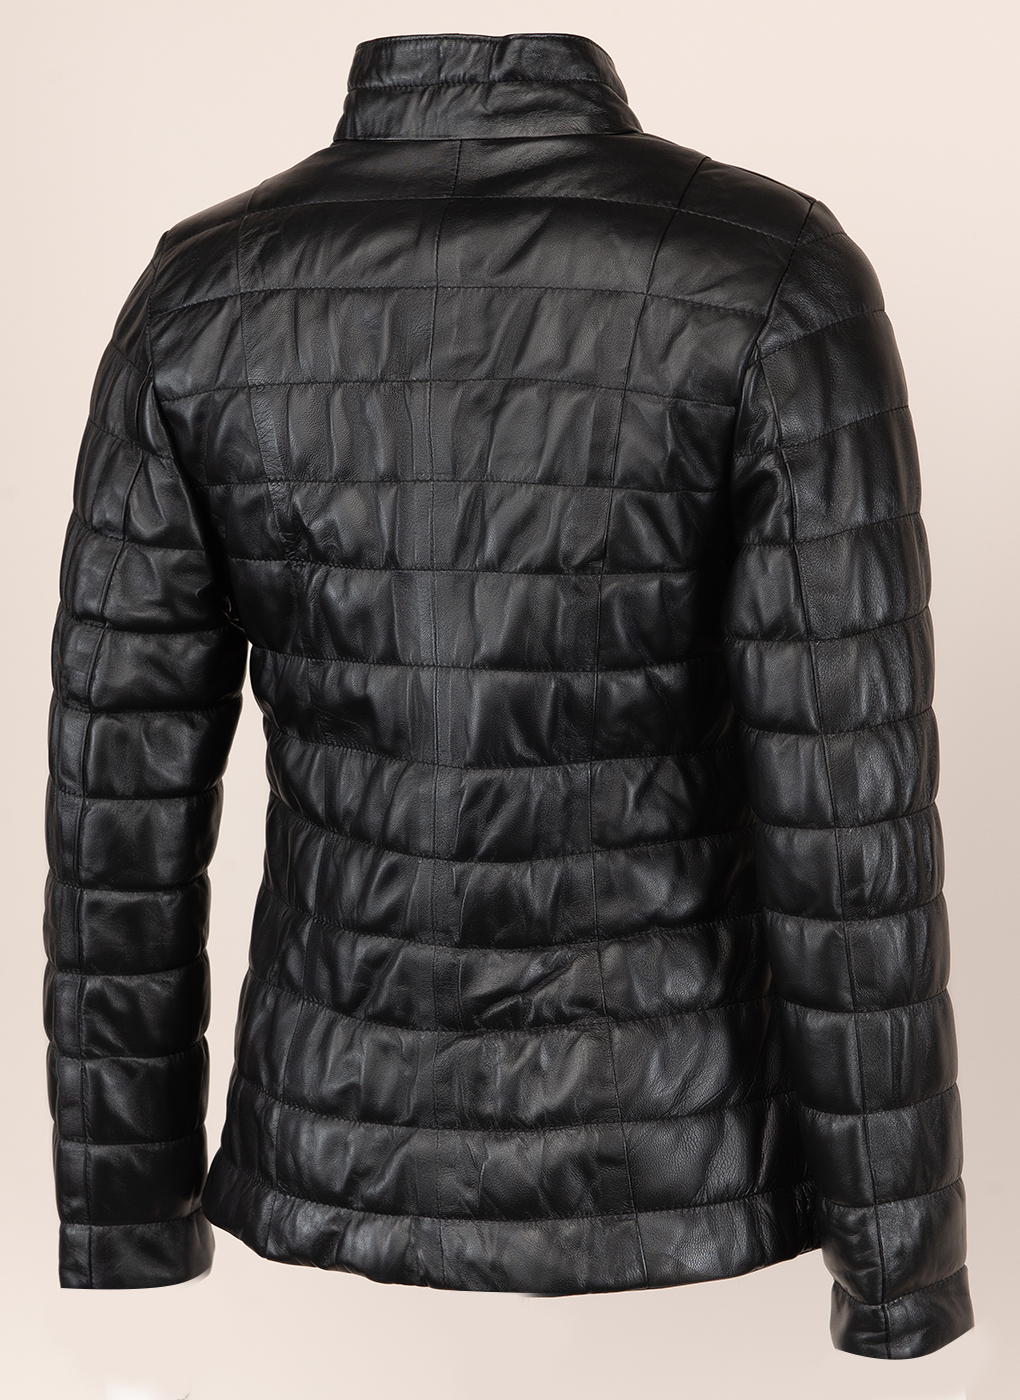 Кожаная куртка женская Каляев 156060 черная 40 EU